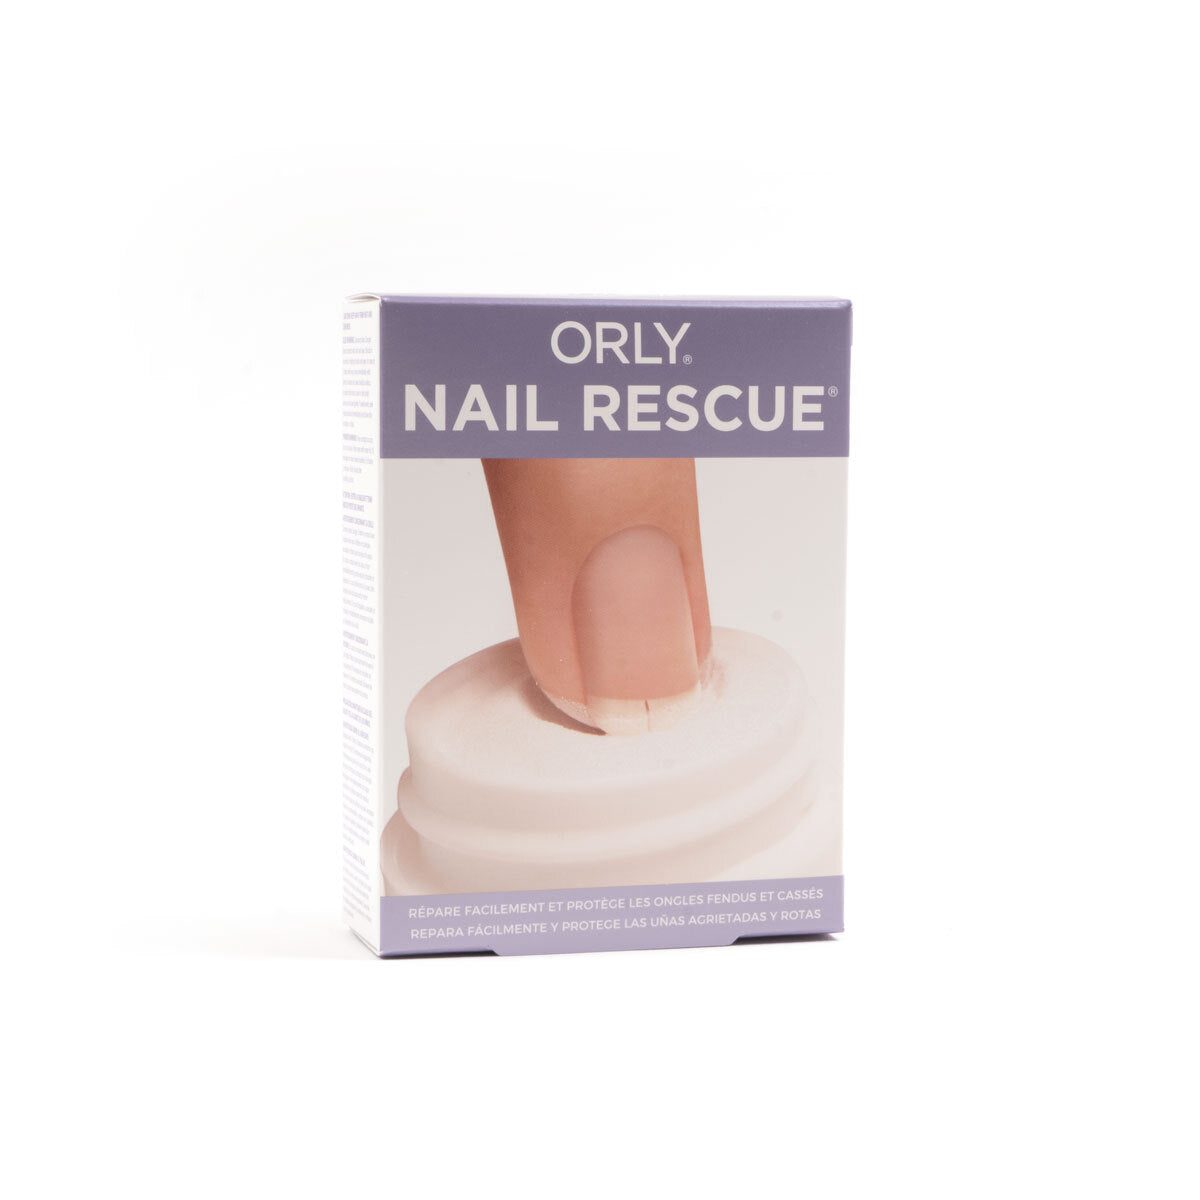 NAIL RESCUE KIT - ORLY Nail Repair